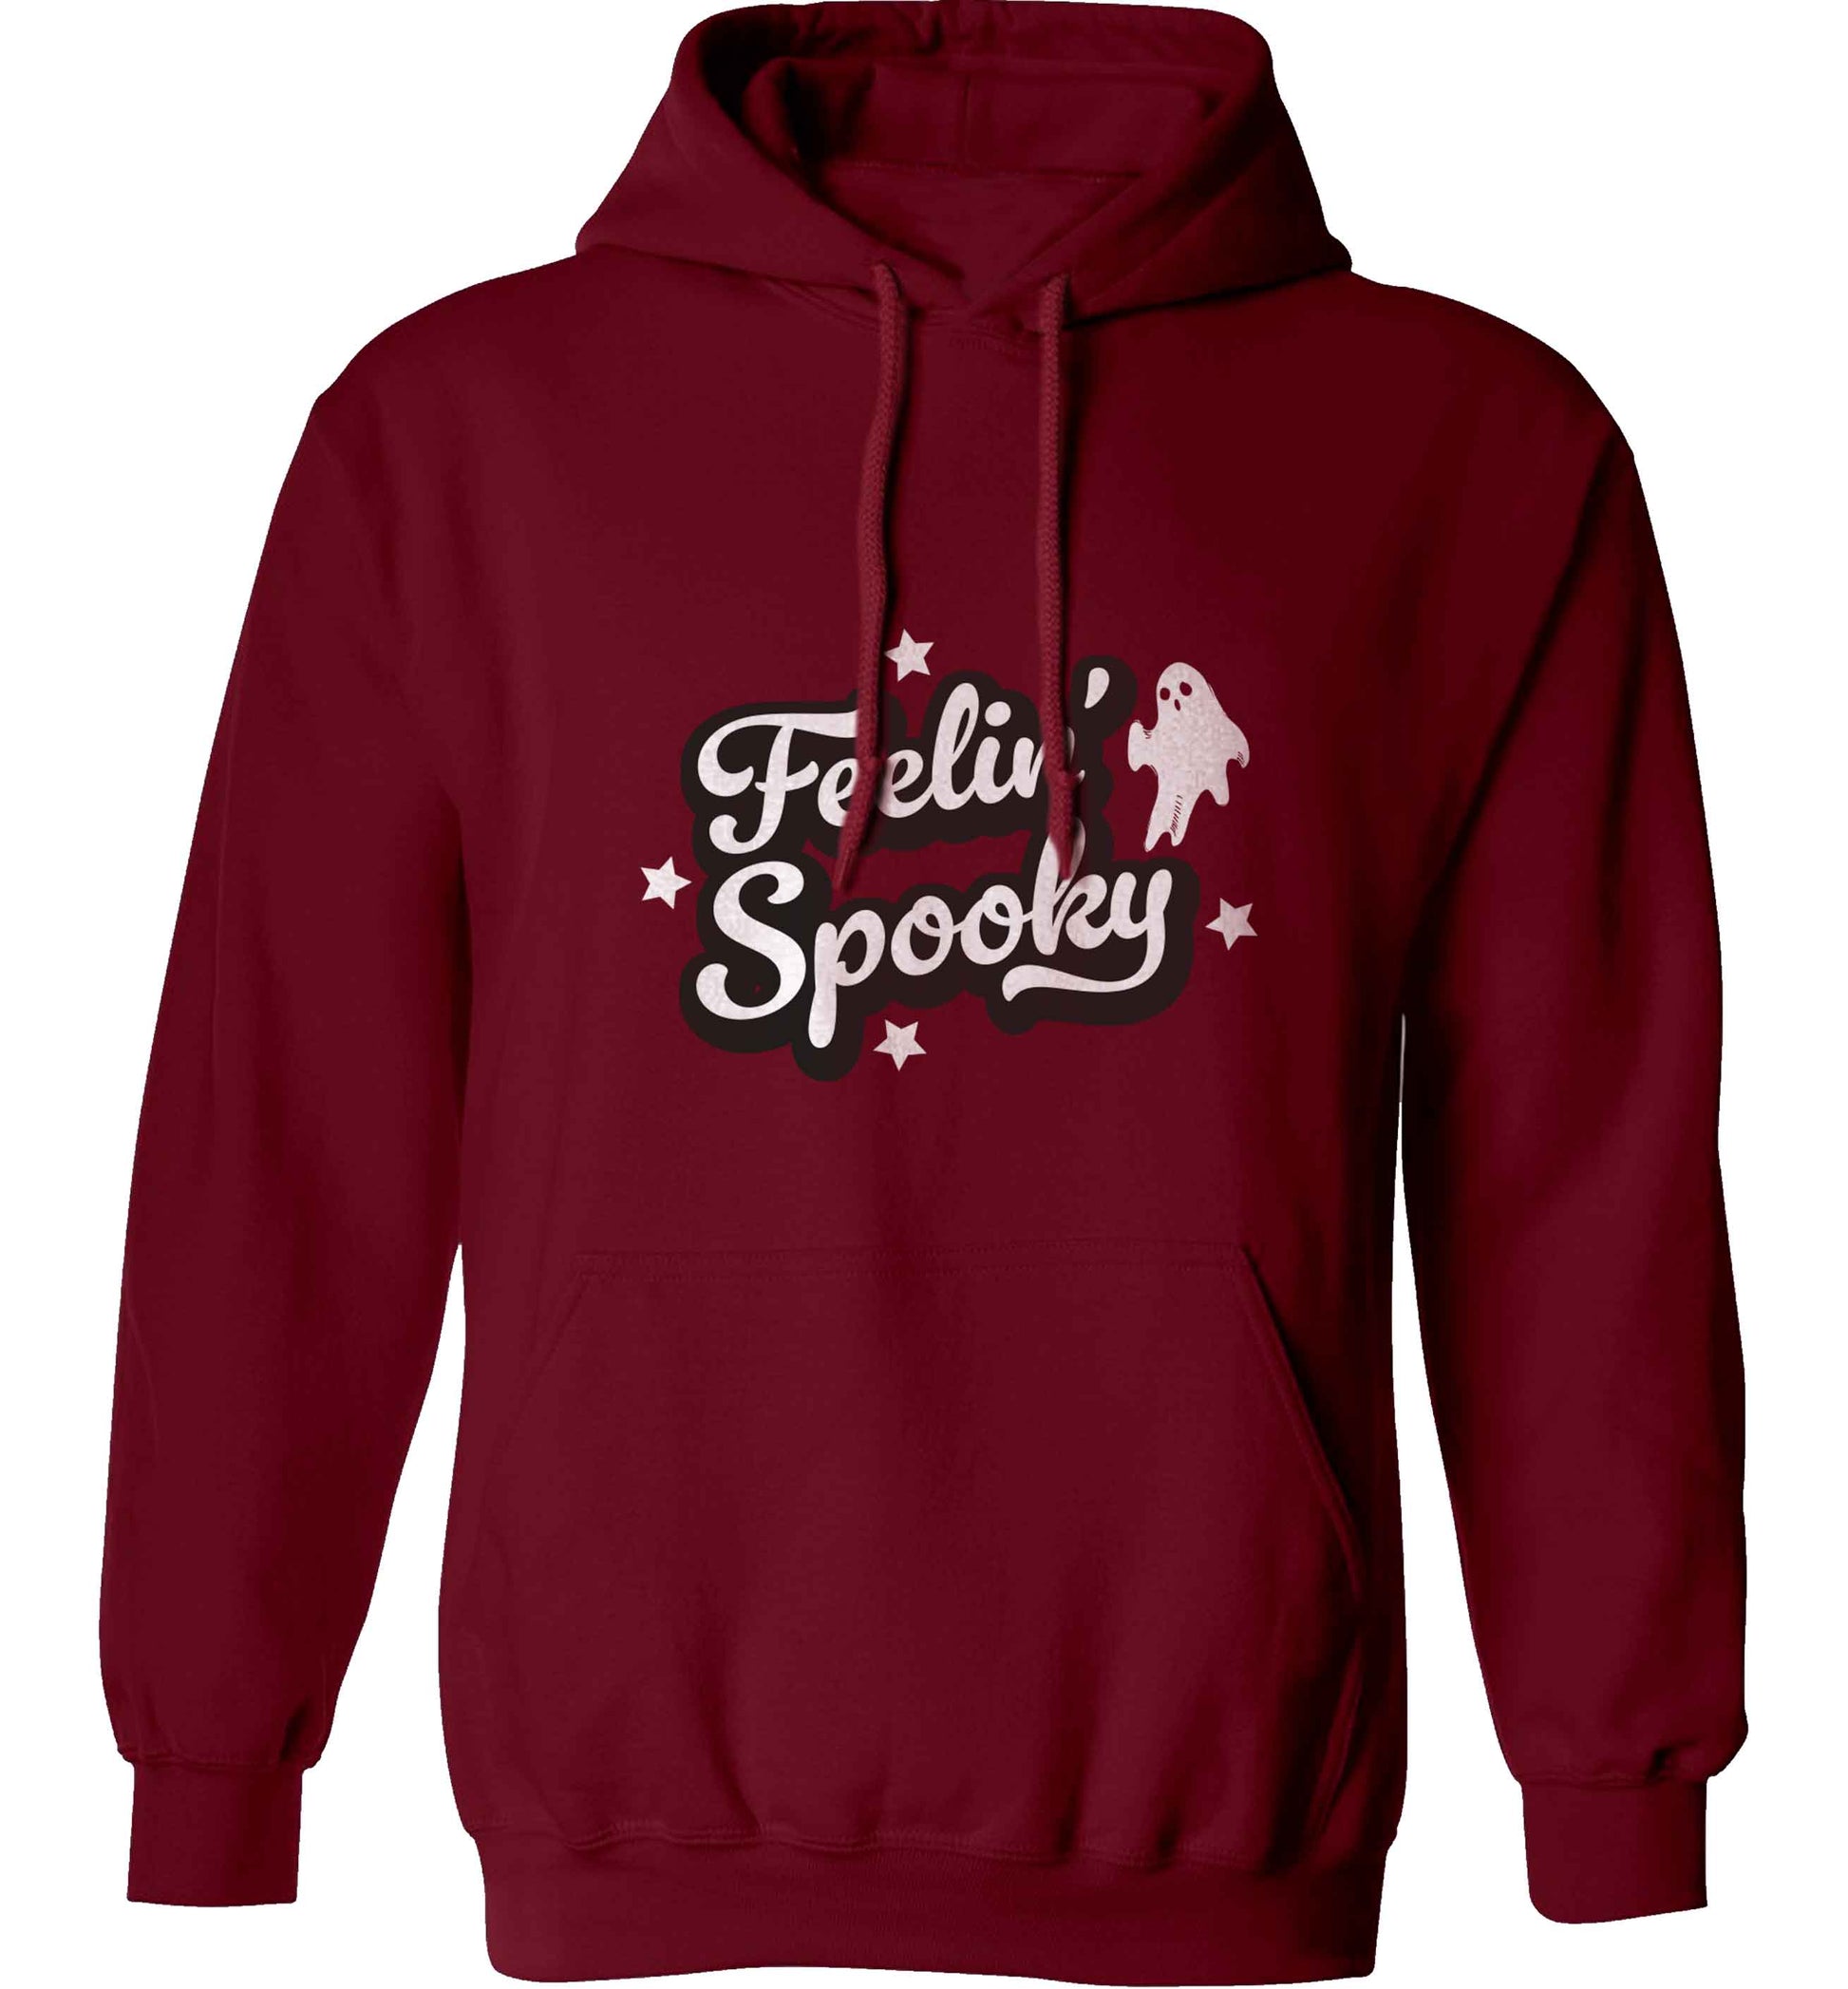 Feelin' Spooky Kit adults unisex maroon hoodie 2XL